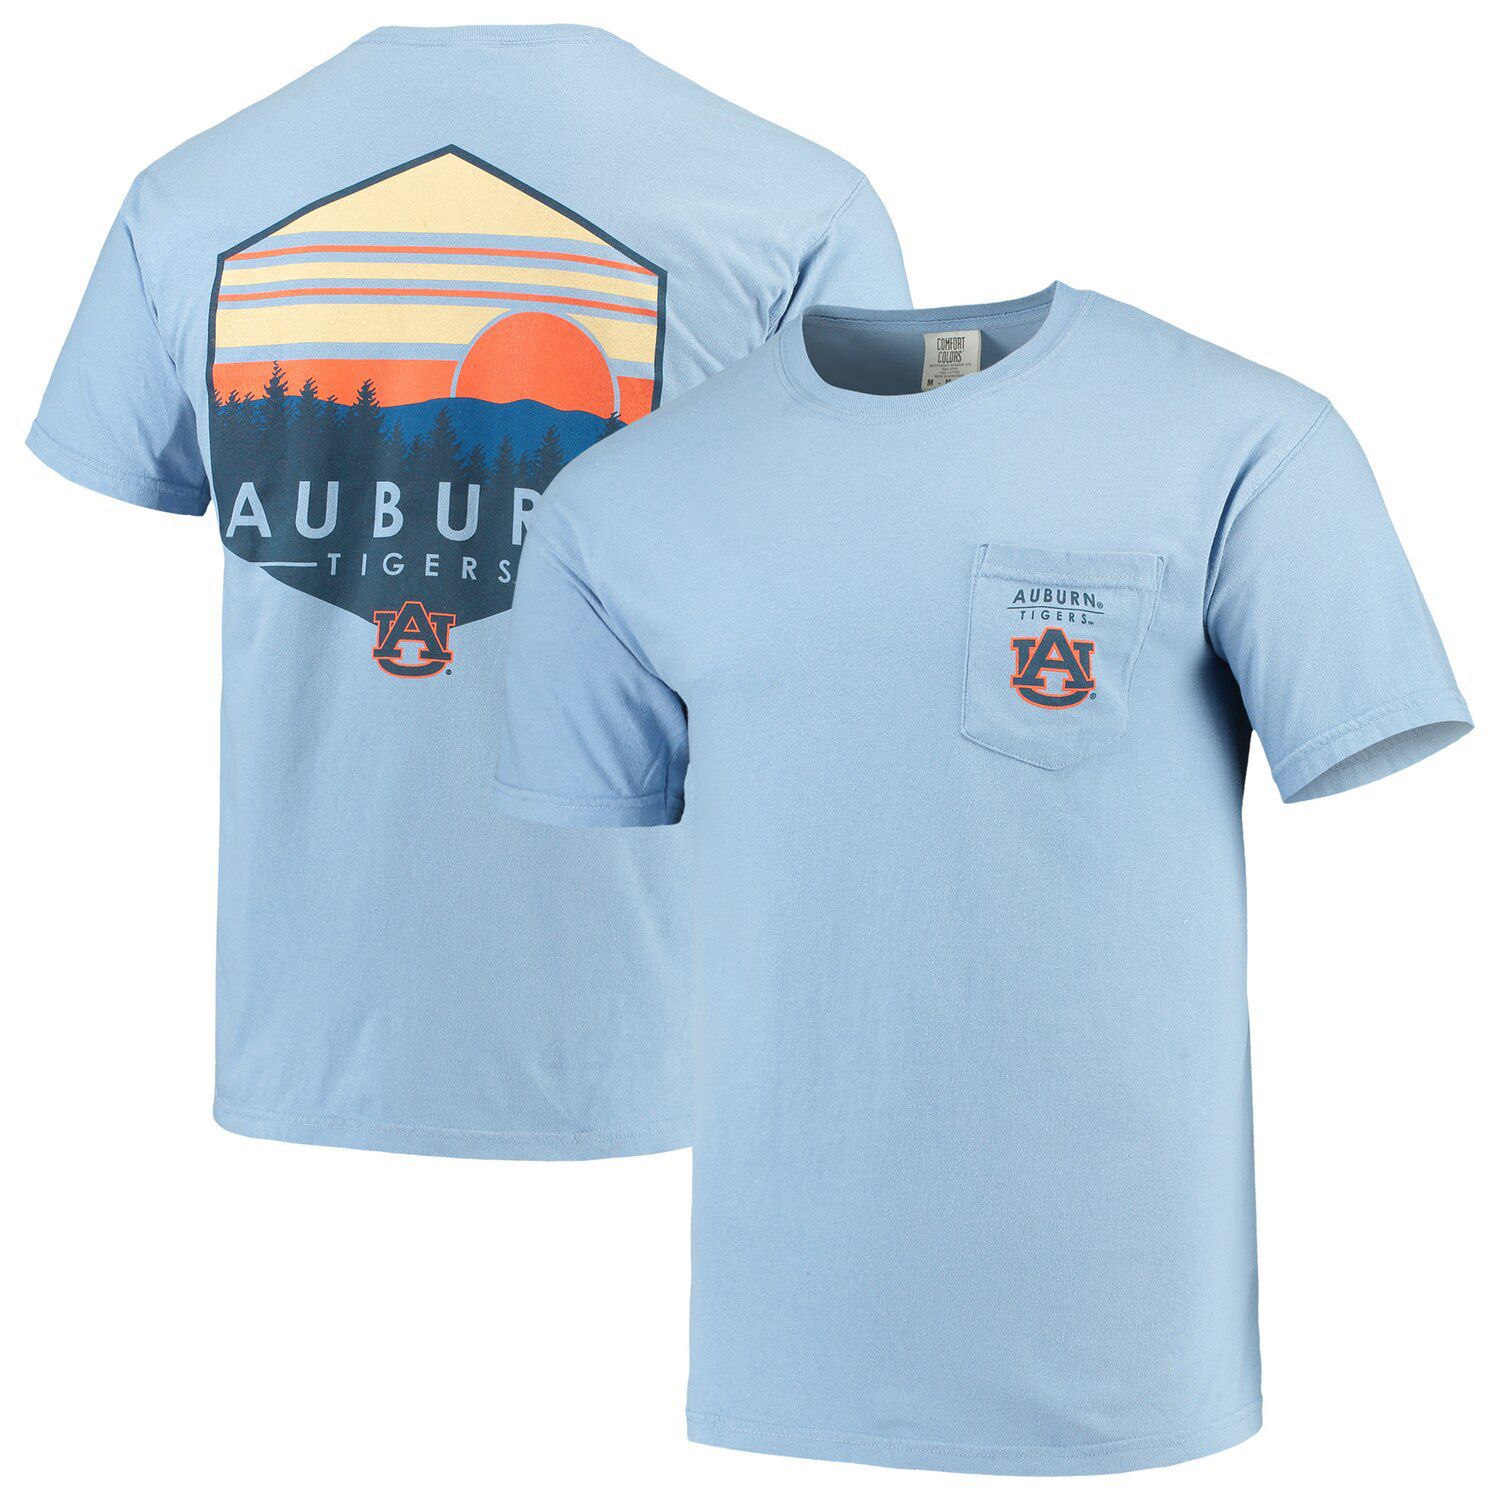 auburn comfort colors shirt